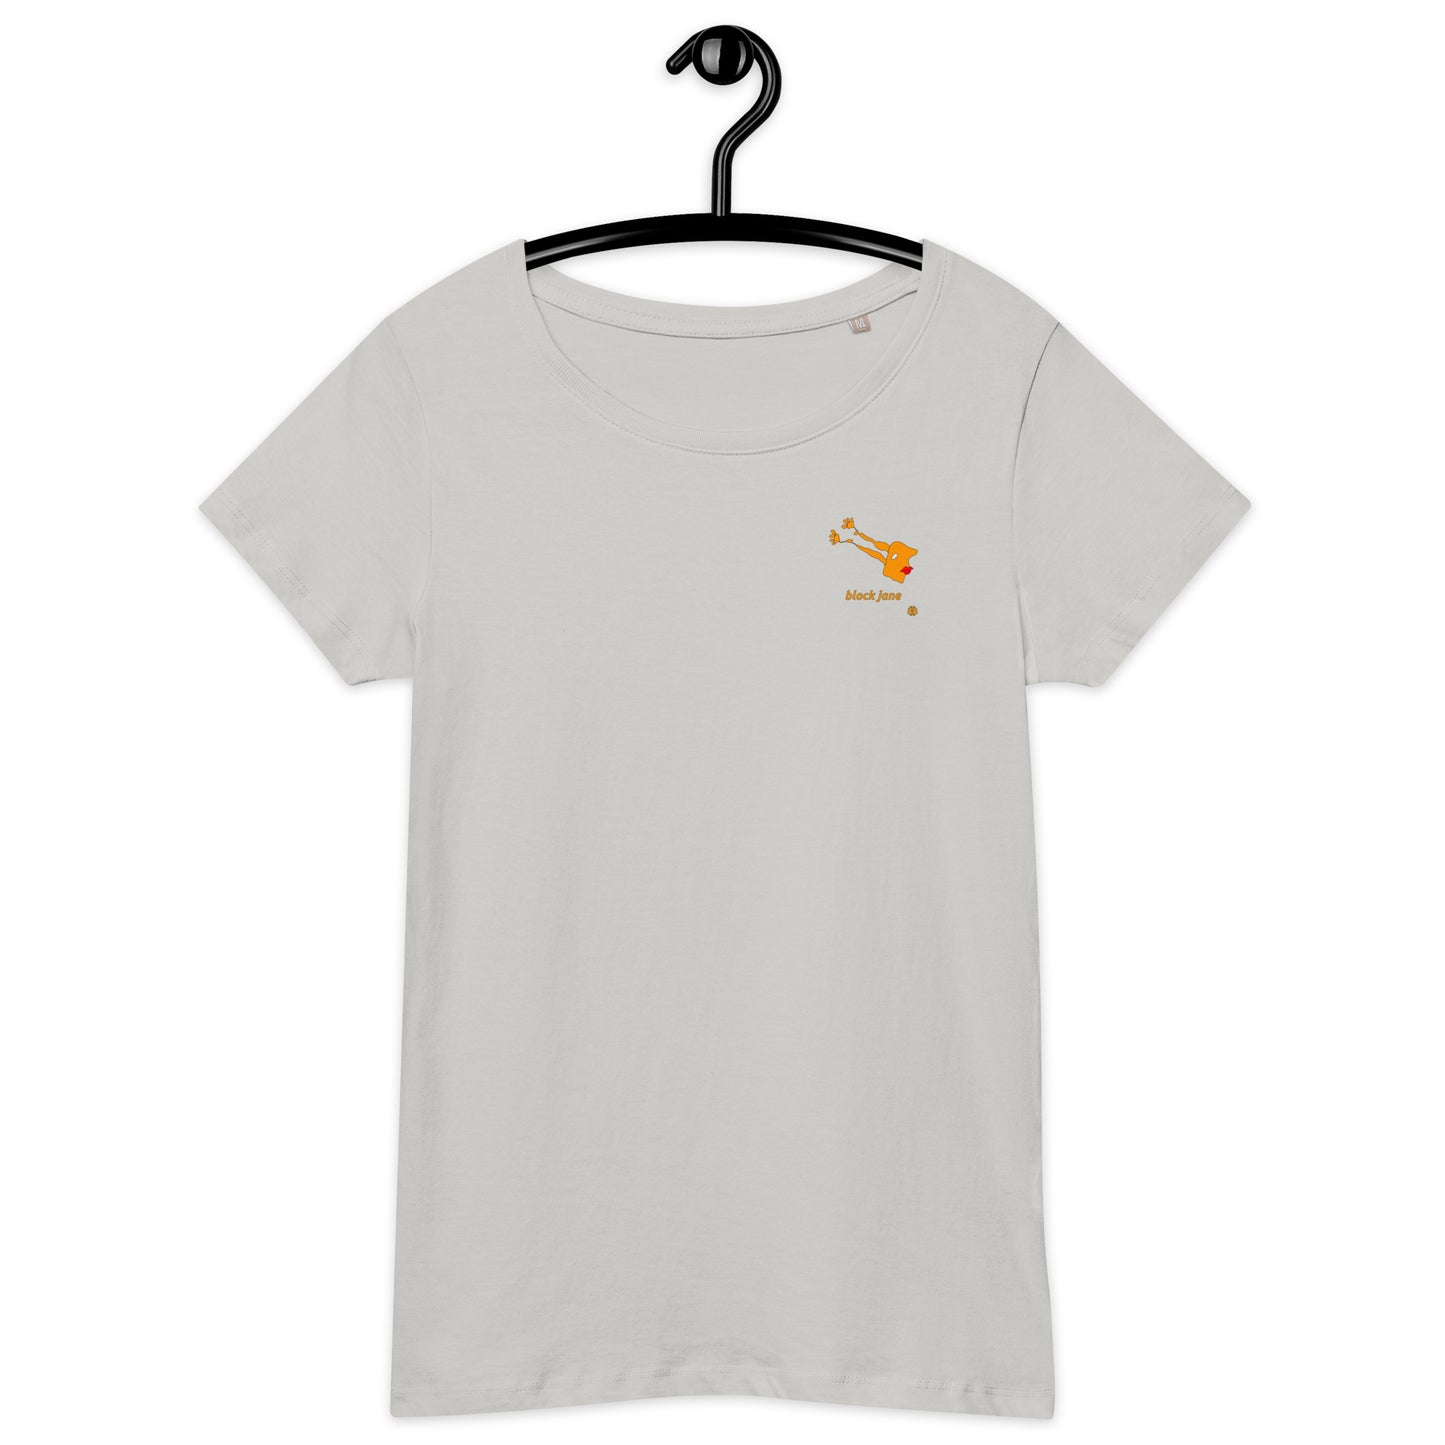 Women’s wide neck short sleeve organic t-shirt "BlockJane_sm"